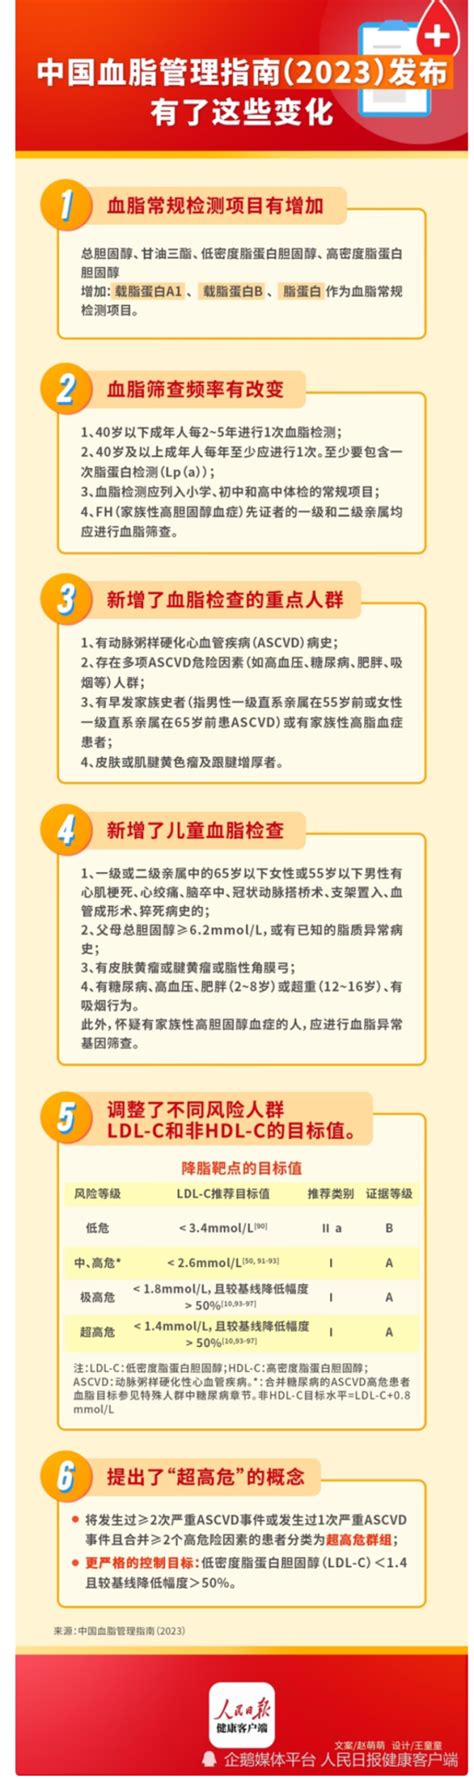 时隔7年迎来调整！最新指南要求：血脂检测列入小学常规检查项目——上海热线HOT频道